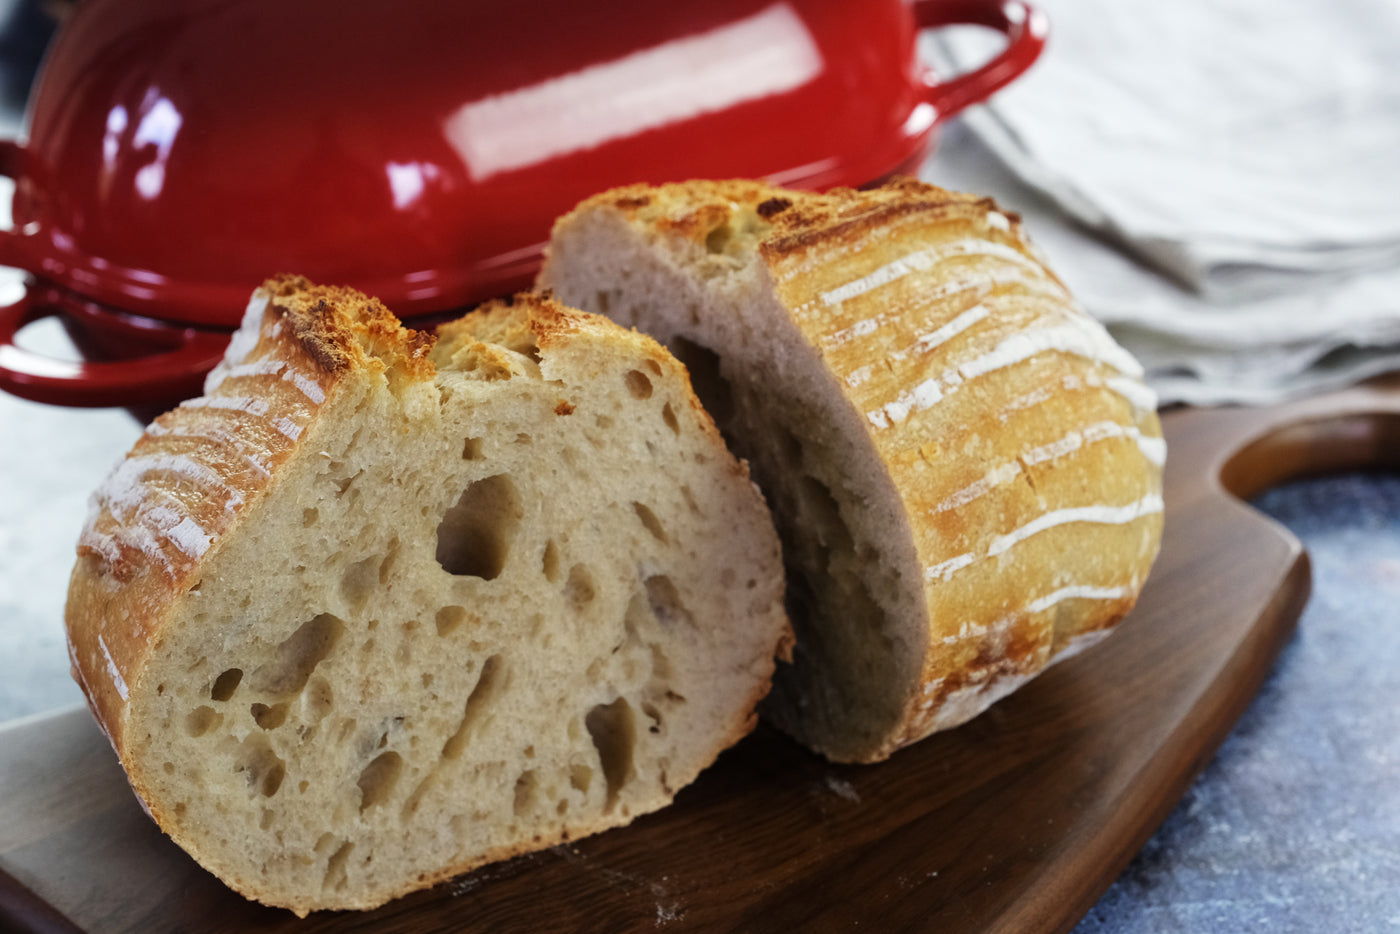 Emaljeret støbejernsbrødform med låg, rød, ovnsikker form til bagning, håndværksbrødsæt - brødform